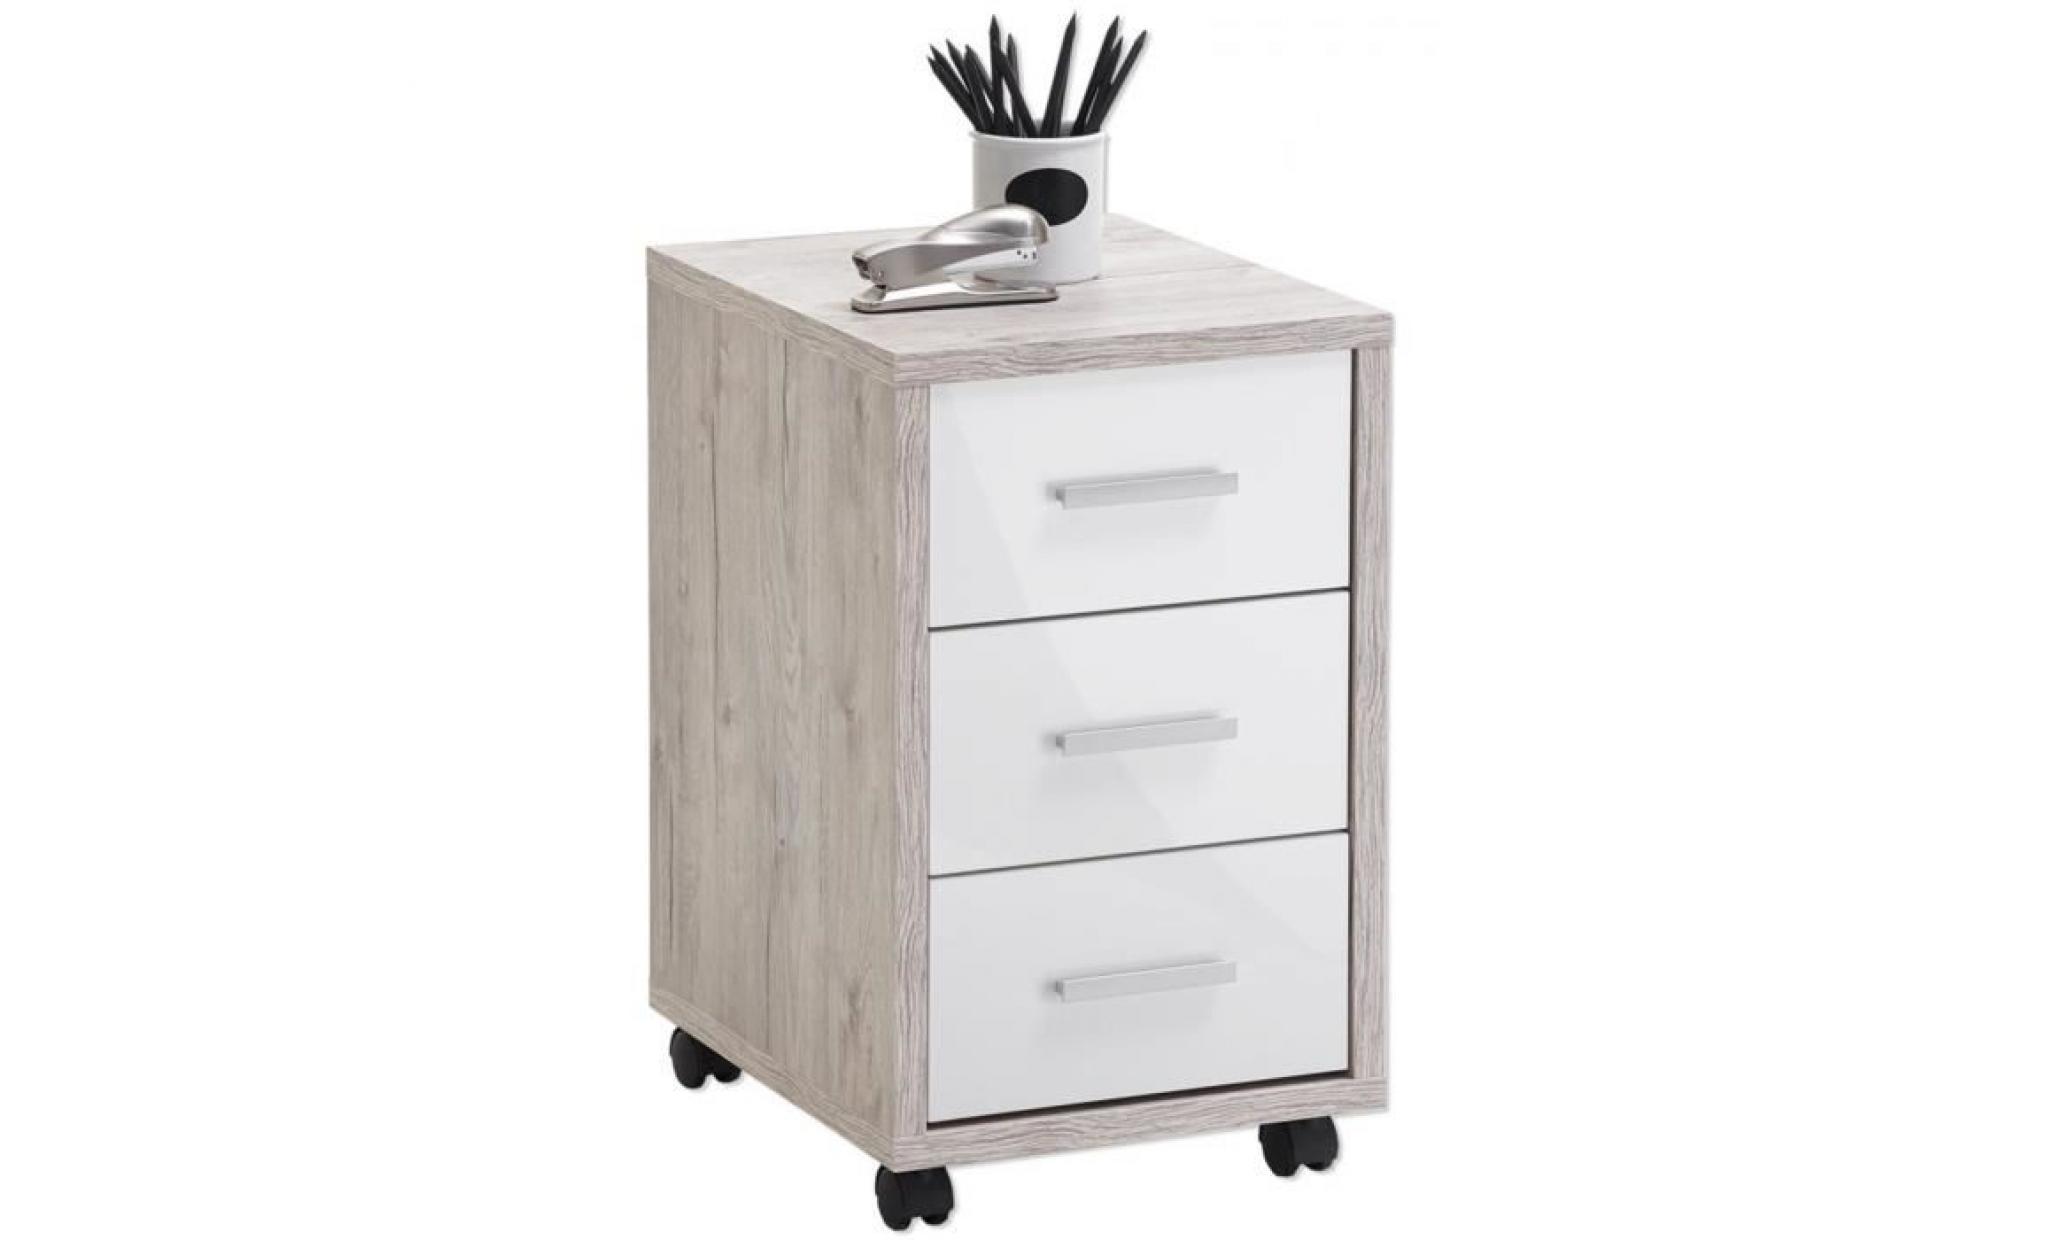 caisson de bureau sur roulettes avec 3 tiroirs coloris chêne sable   blanc brillant   dim : l 35 x h 59 x p 42 cm